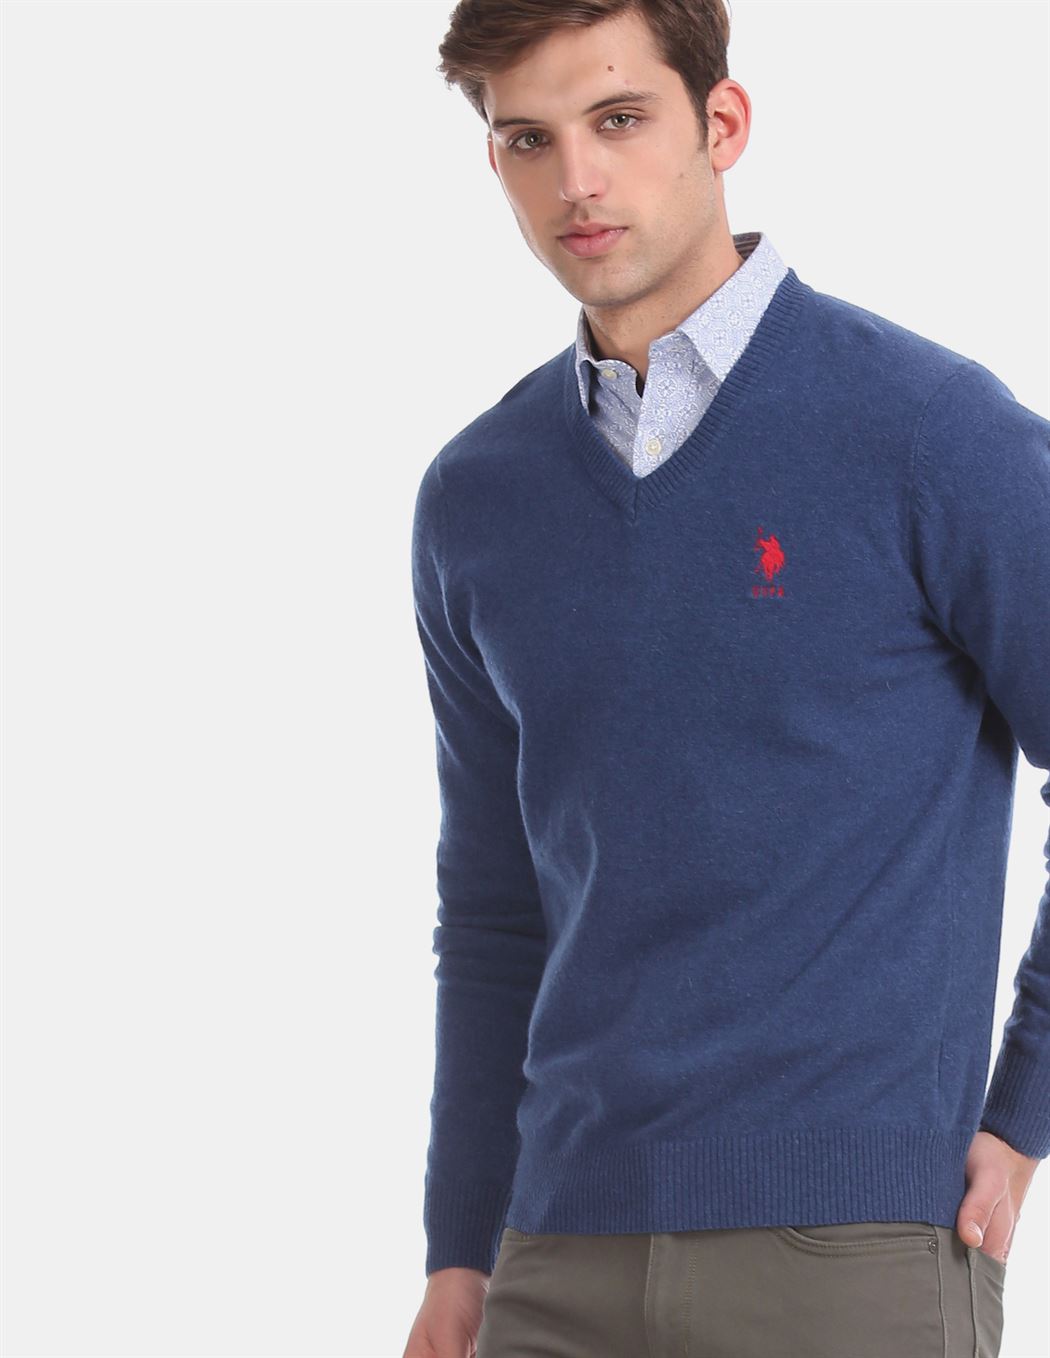 U.S.Polo Association Men'S Casual Wear Solid Blue Sweater